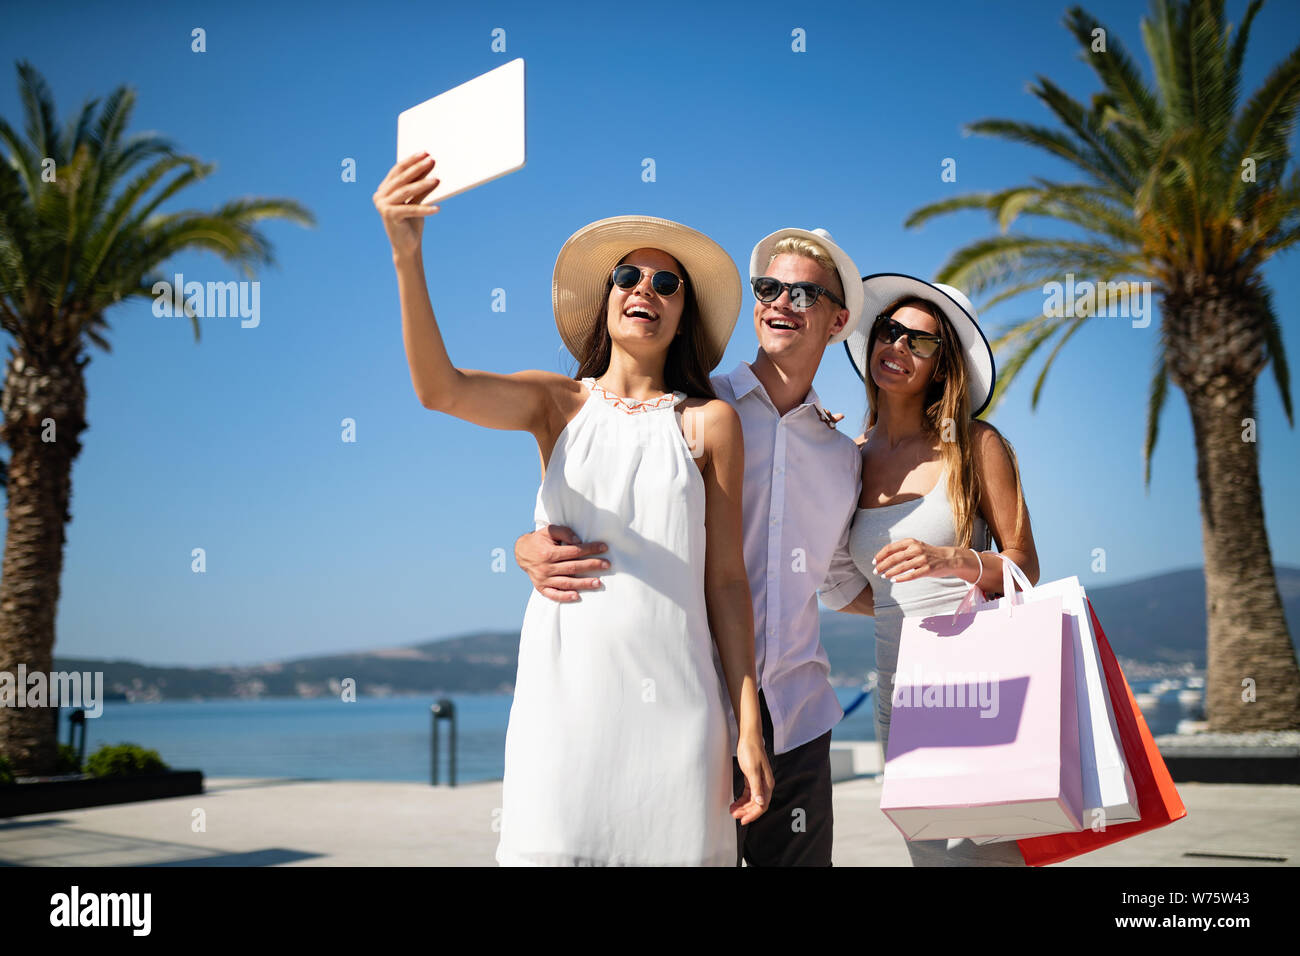 Gruppe junger Freunde, die nach dem Einkaufen selfie Stockfoto